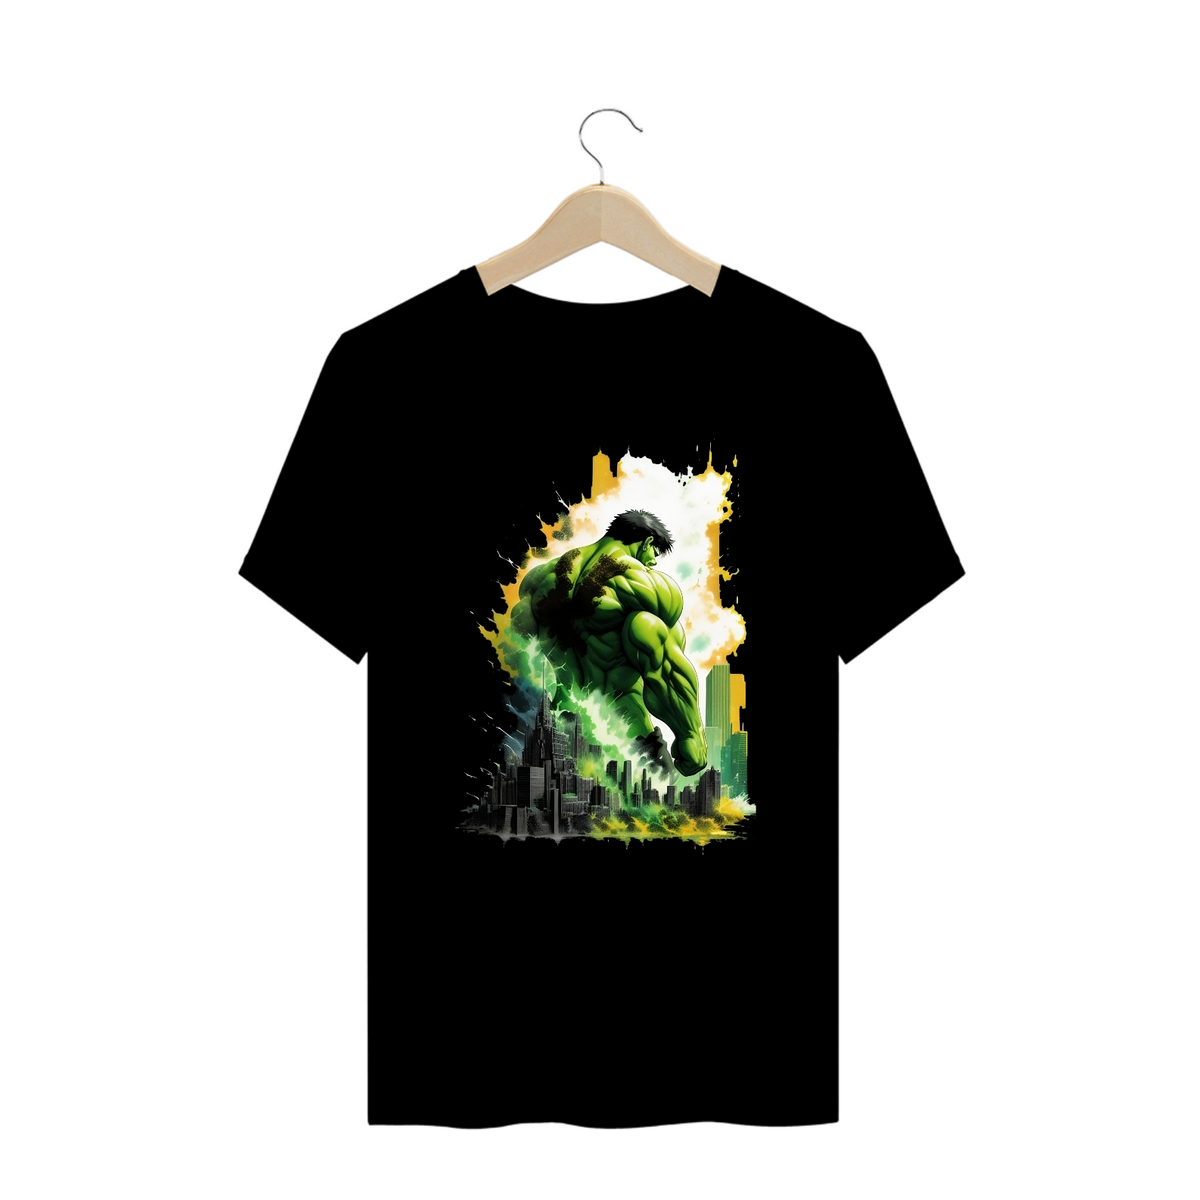 Nome do produto: Camisa Hulk